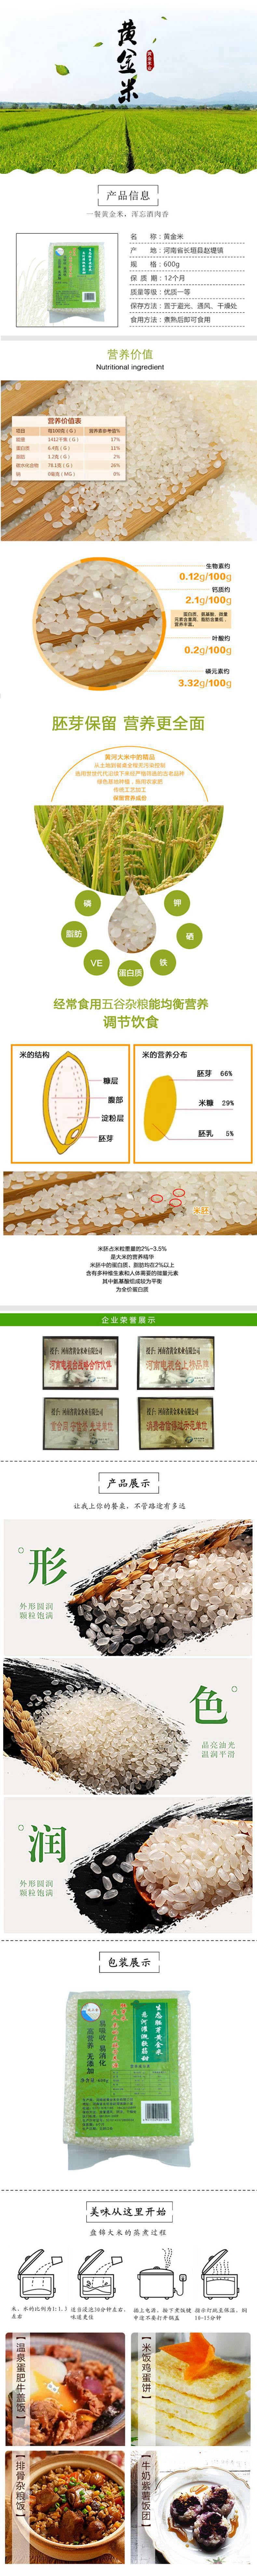 堤上金 胚芽米 600克 糙大米玄米营养农家胚芽米可发芽新米